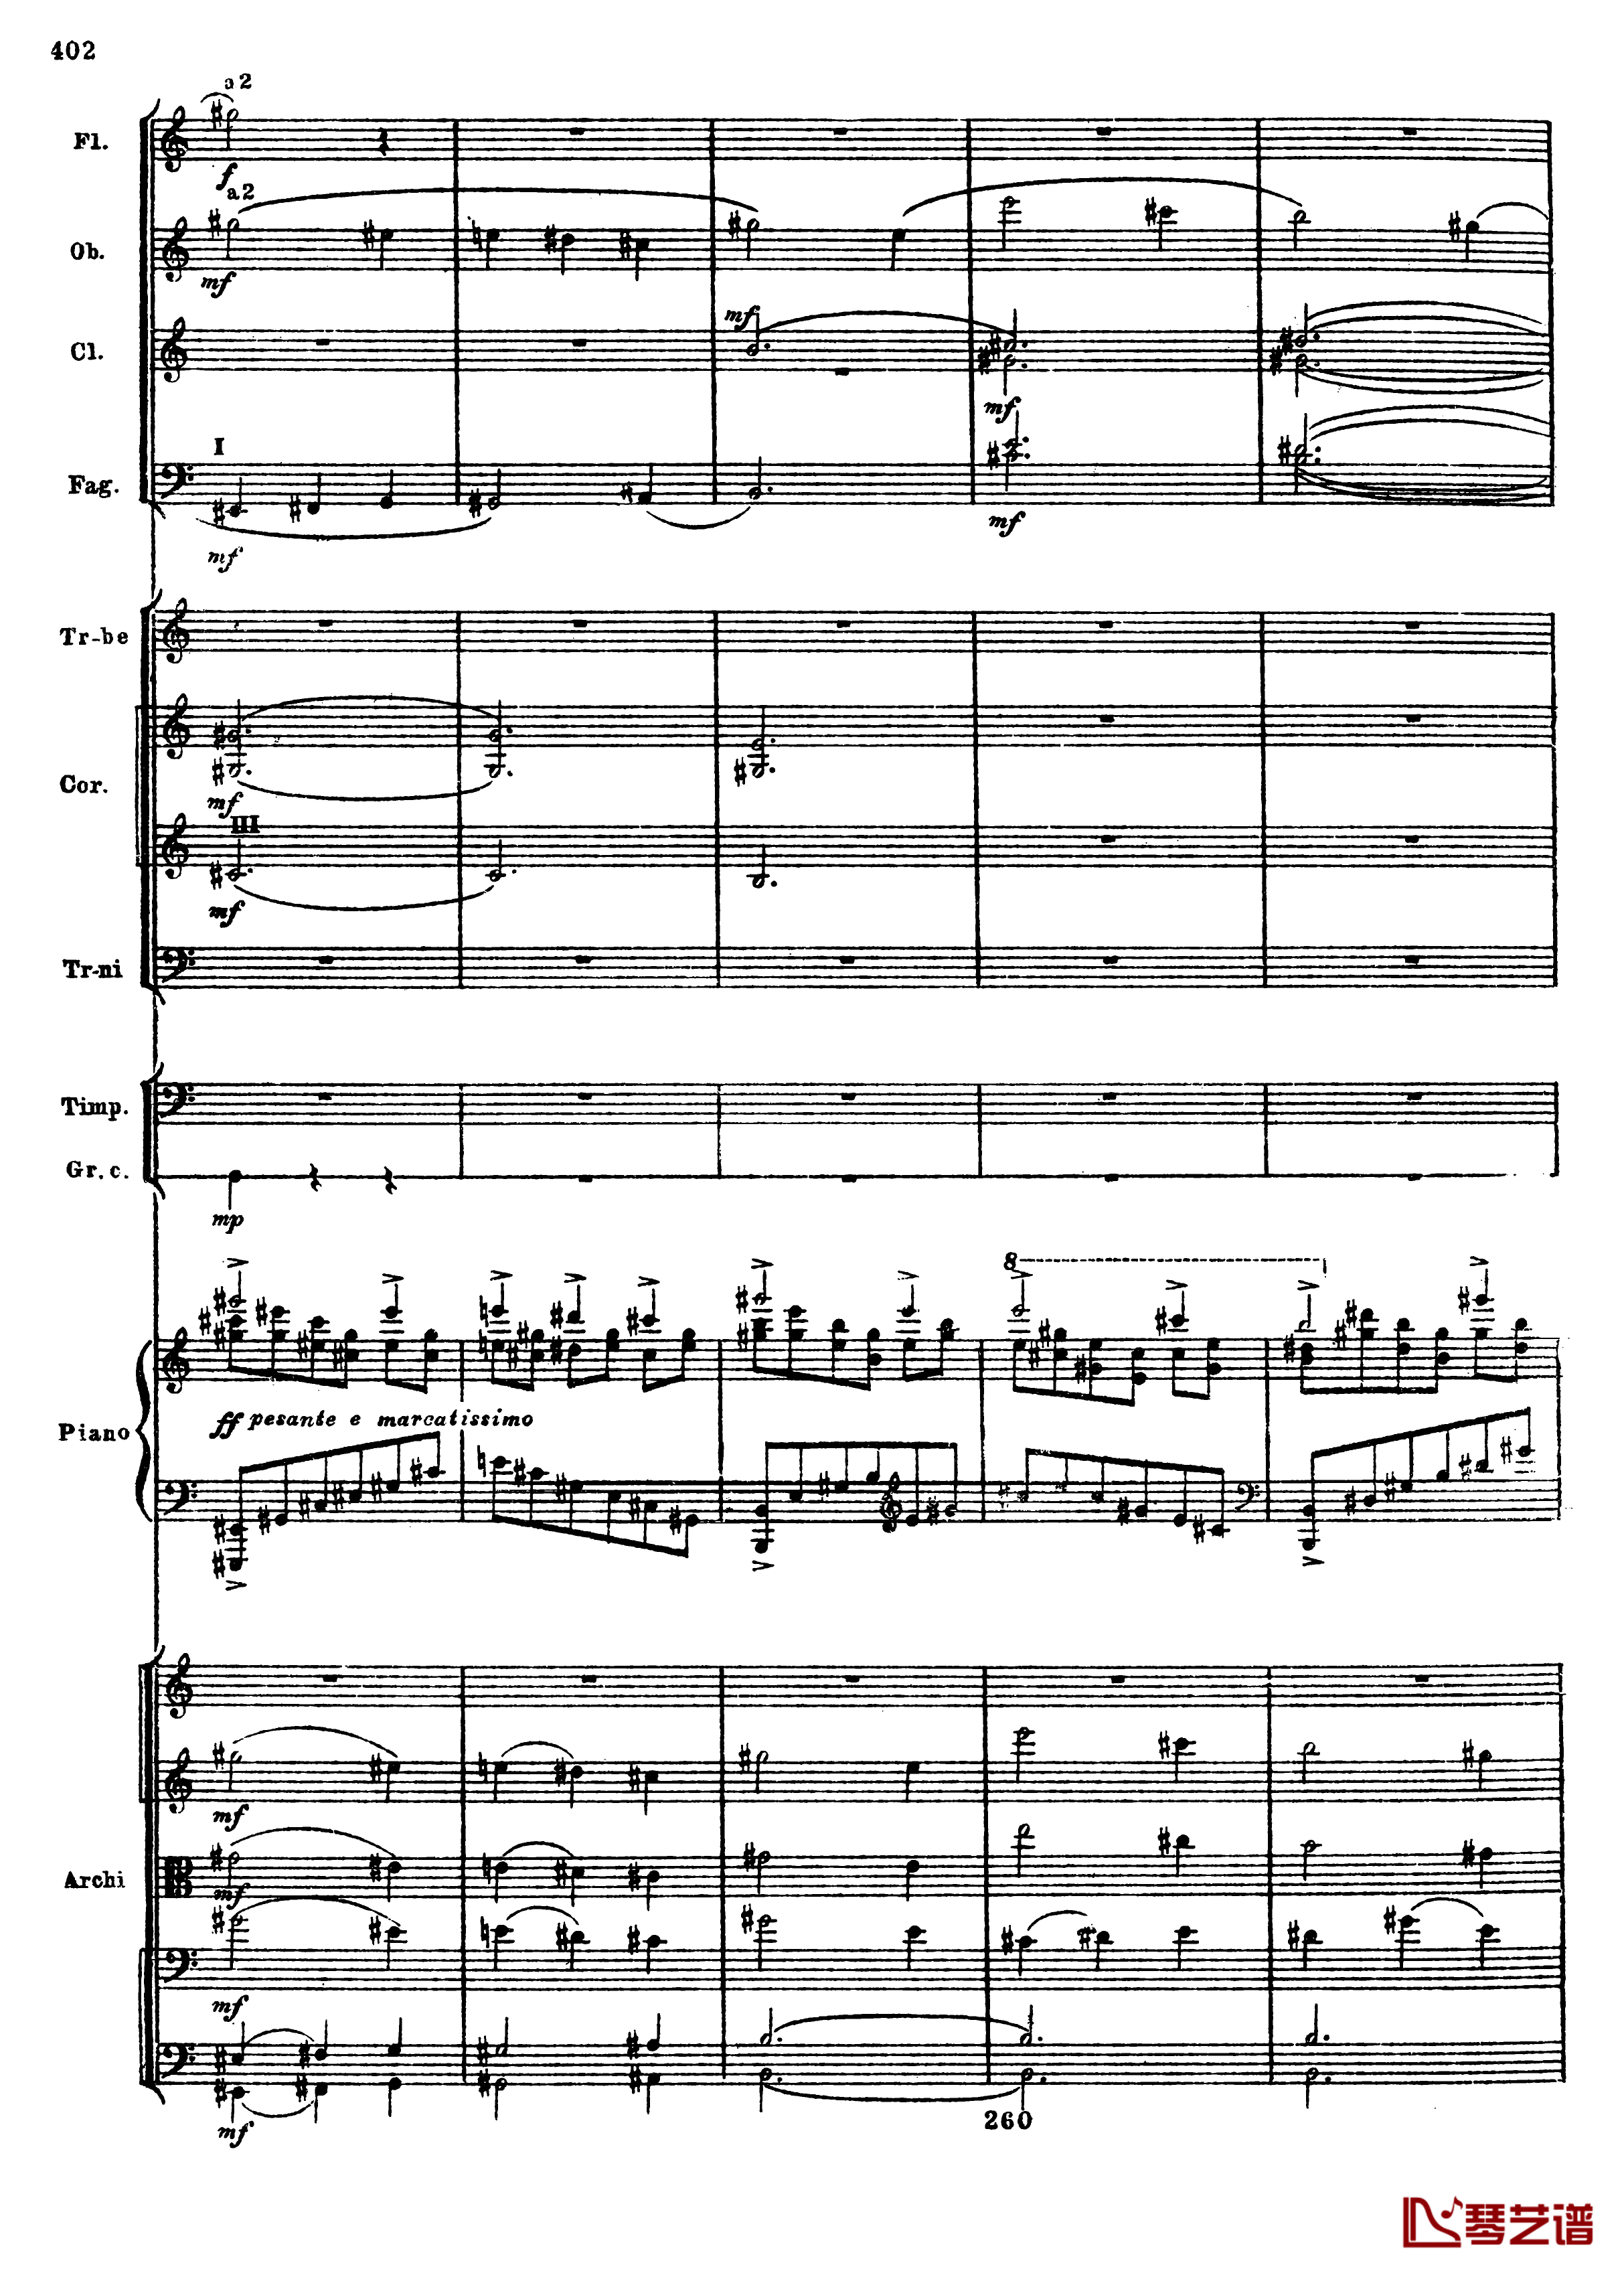 普罗科菲耶夫第三钢琴协奏曲钢琴谱-总谱-普罗科非耶夫134